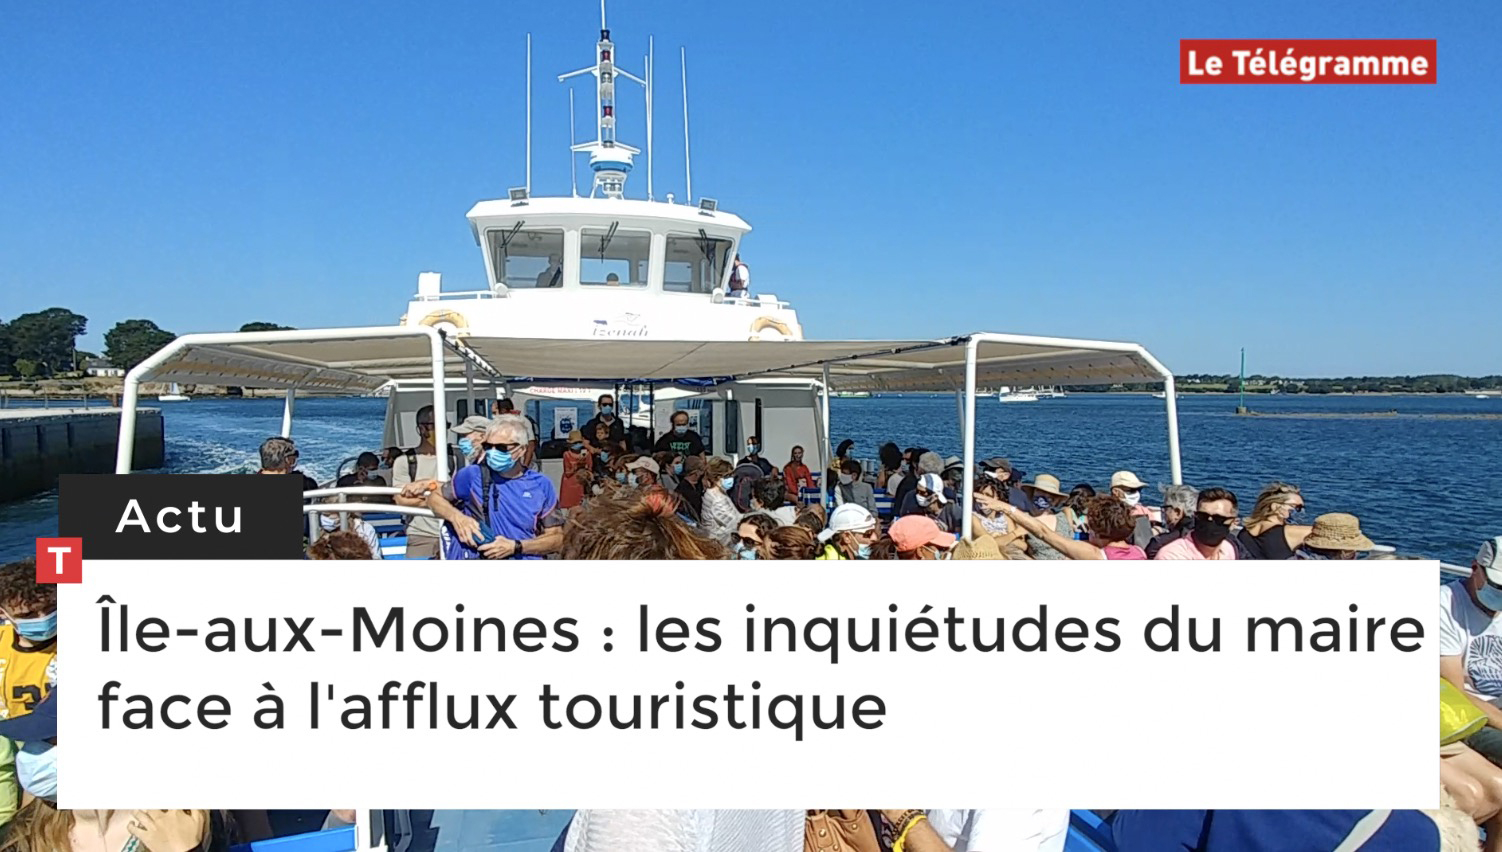 Île-aux-Moines : les inquiétudes du maire face à l'afflux touristique (Le Télégramme)